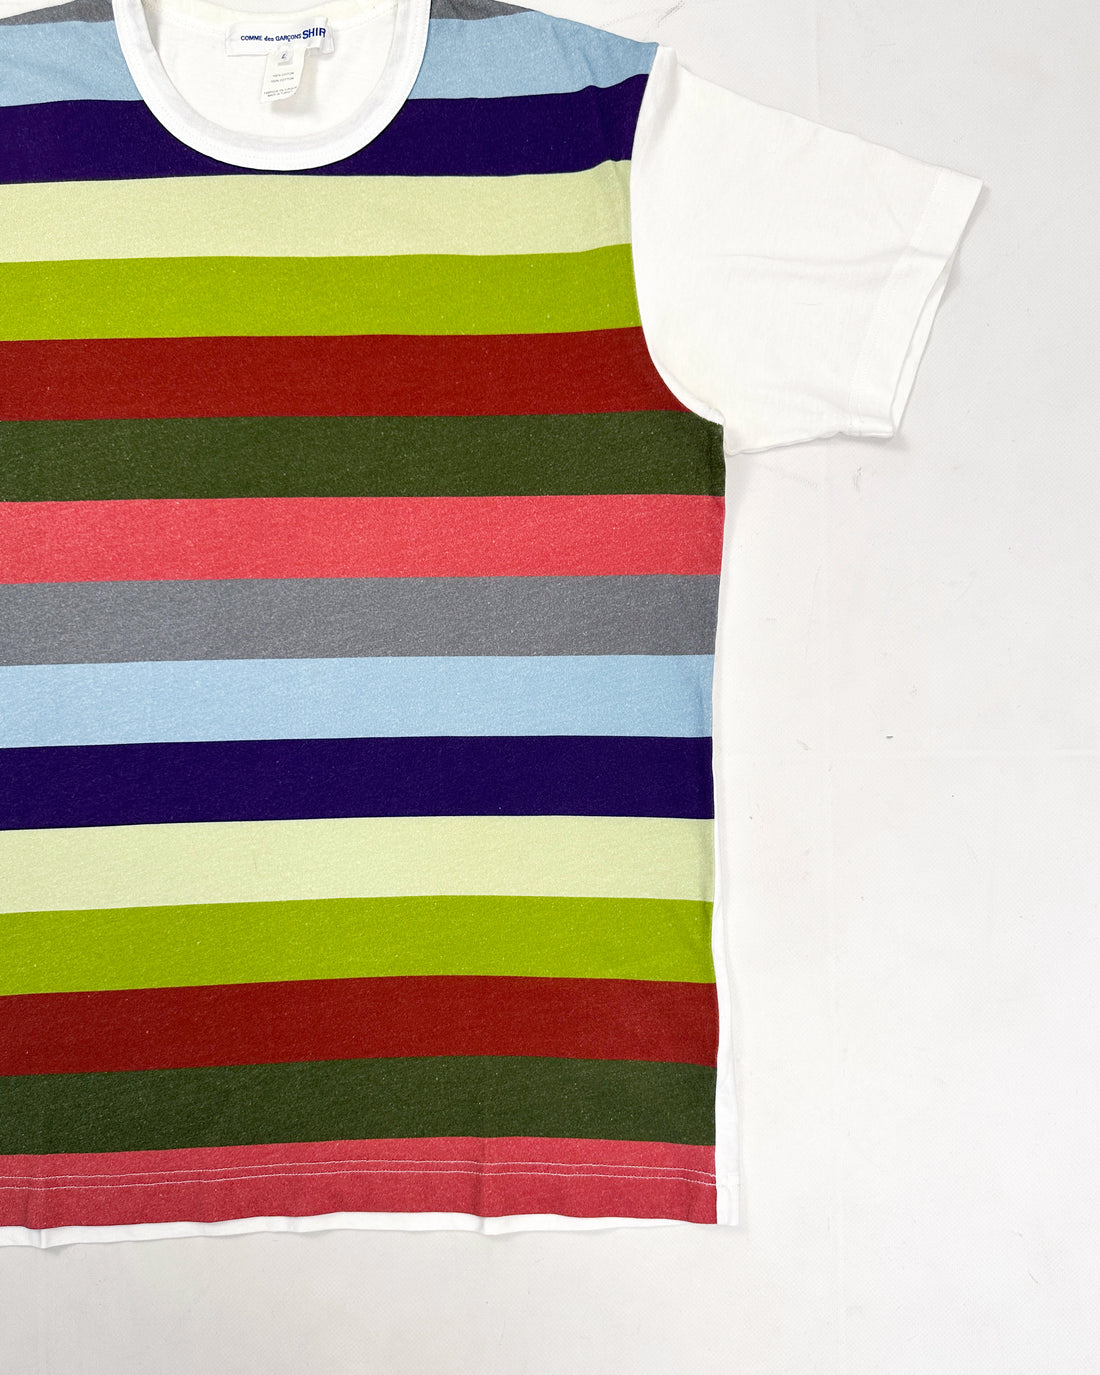 Comme des Garçons Shirt Multicolor Stripes Tee 2020